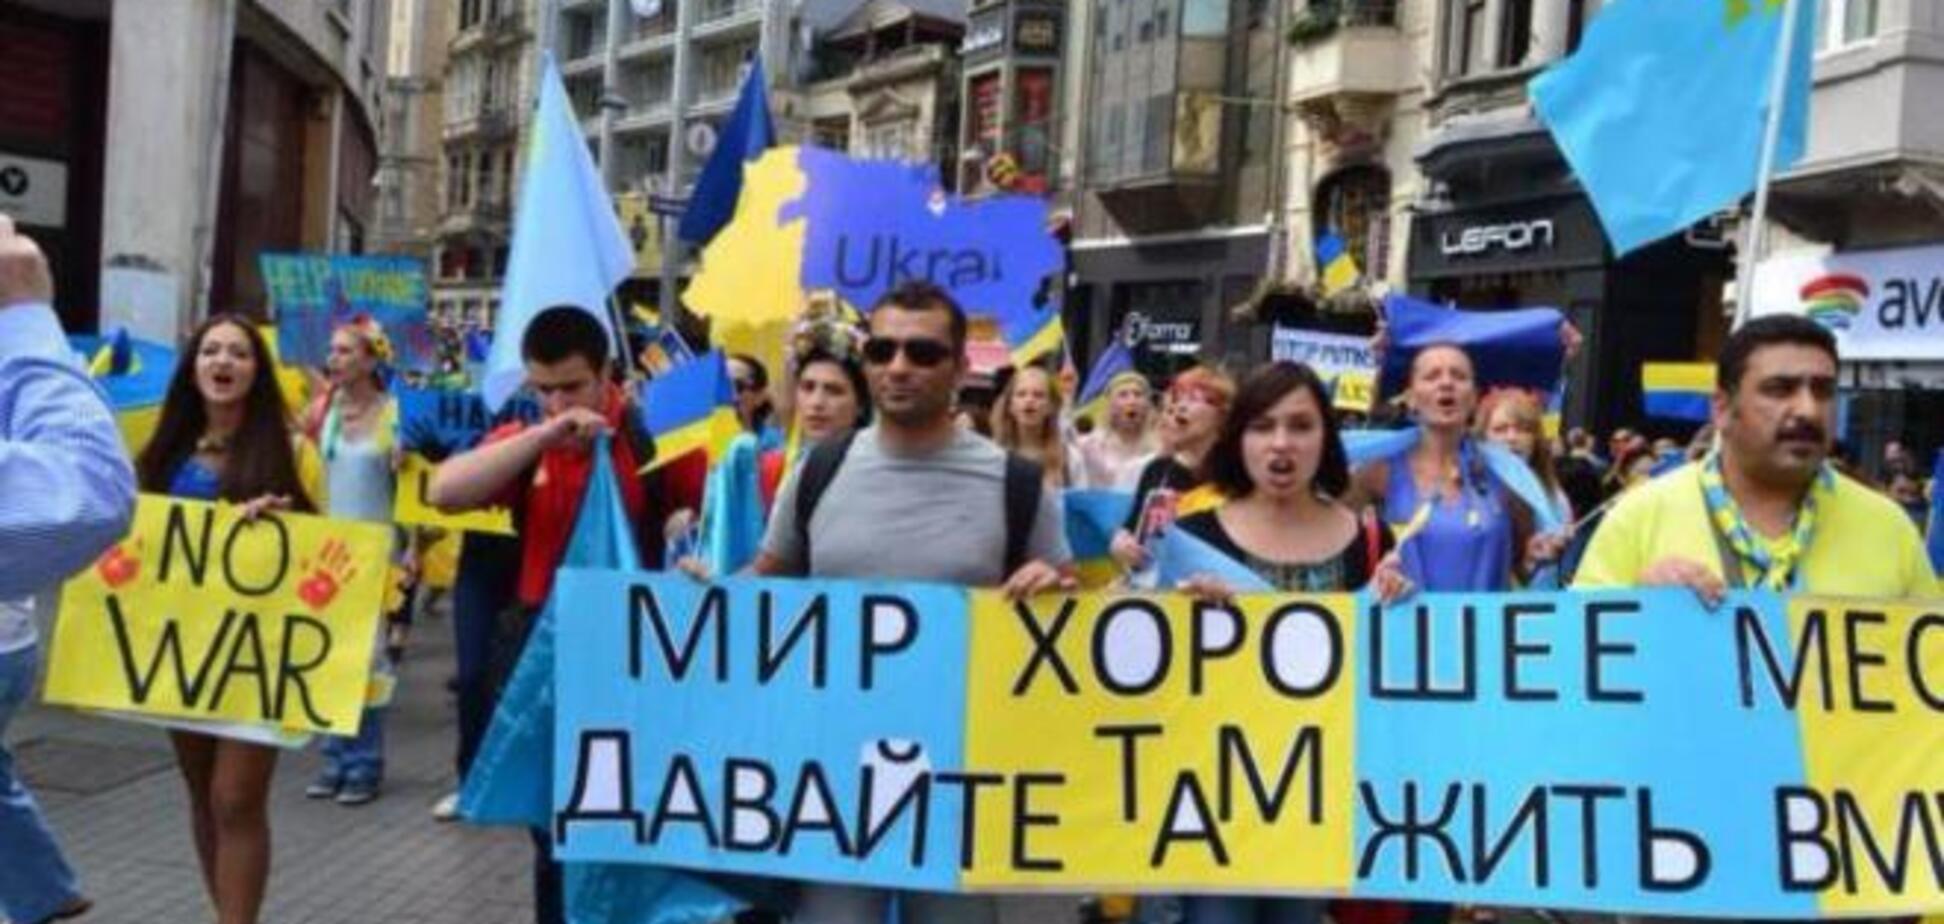 Италия, Турция и Португалия прошли 'Маршем мира' в поддержку Украины